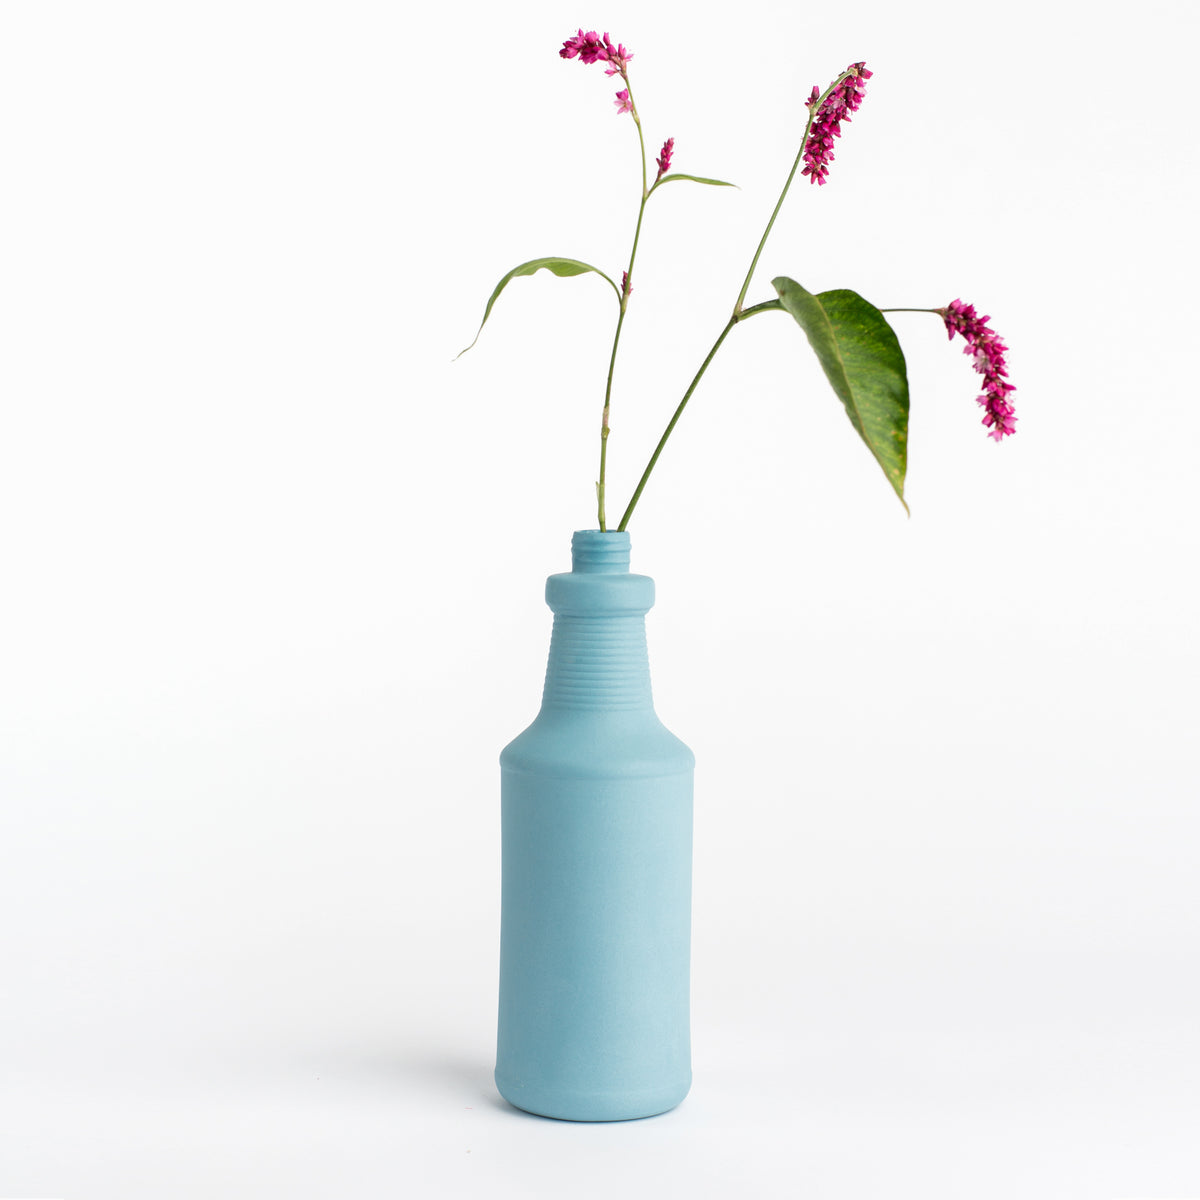 Porzellan-Vase #17 von Foekje Fleur bei Wilhelm die 3.